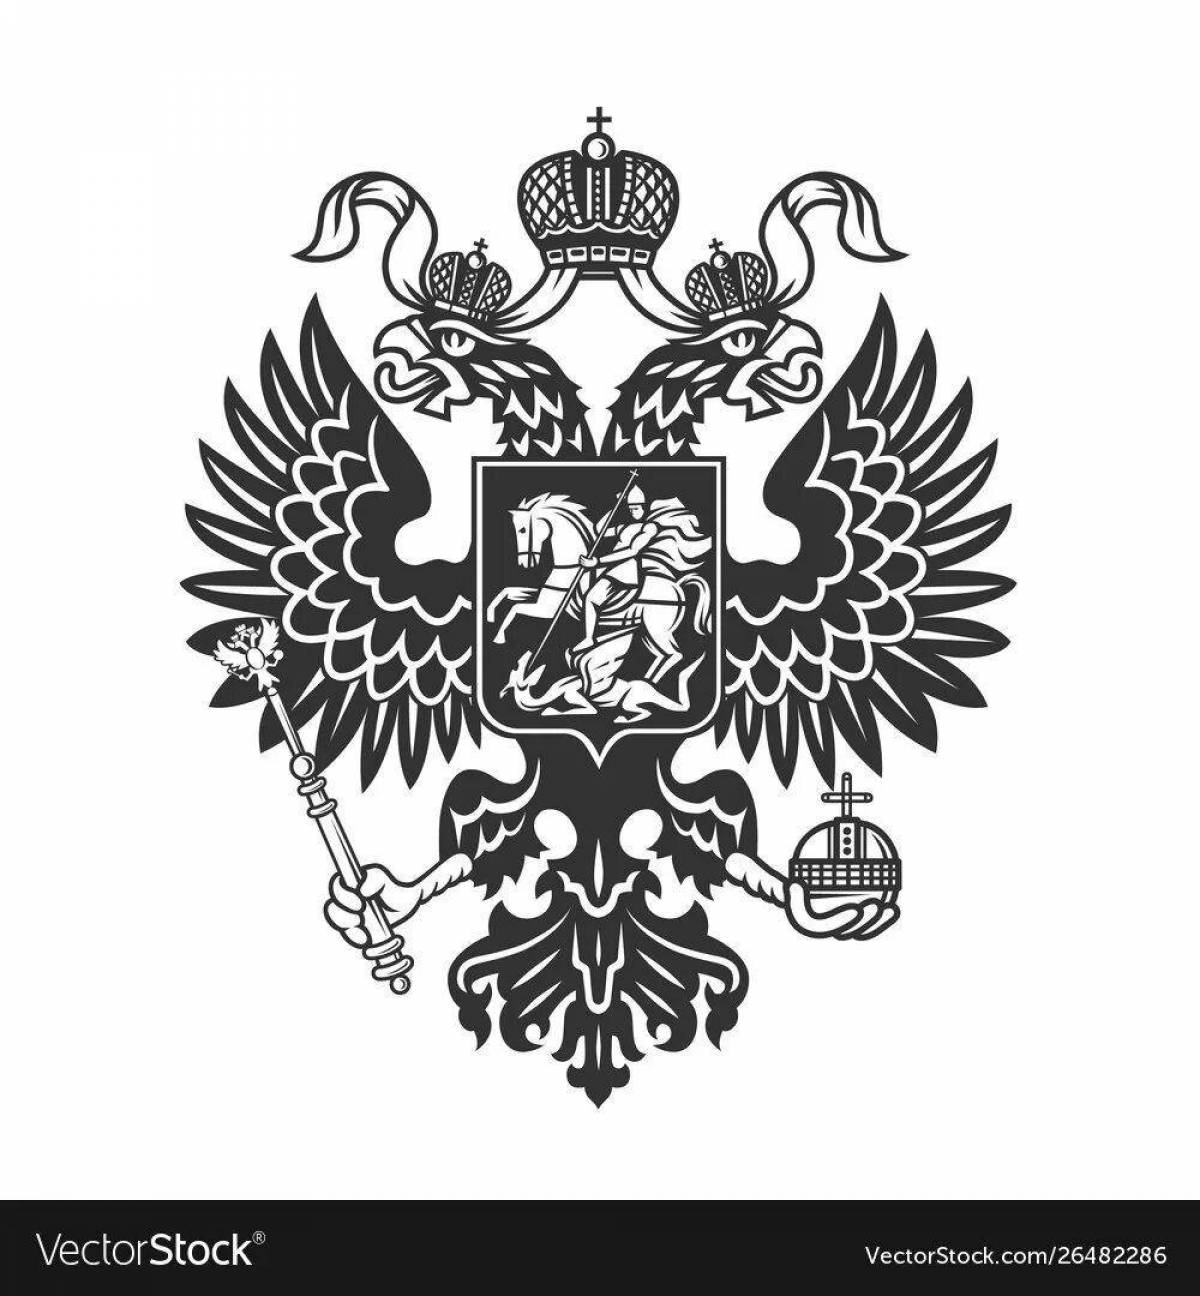 Российская империя #4